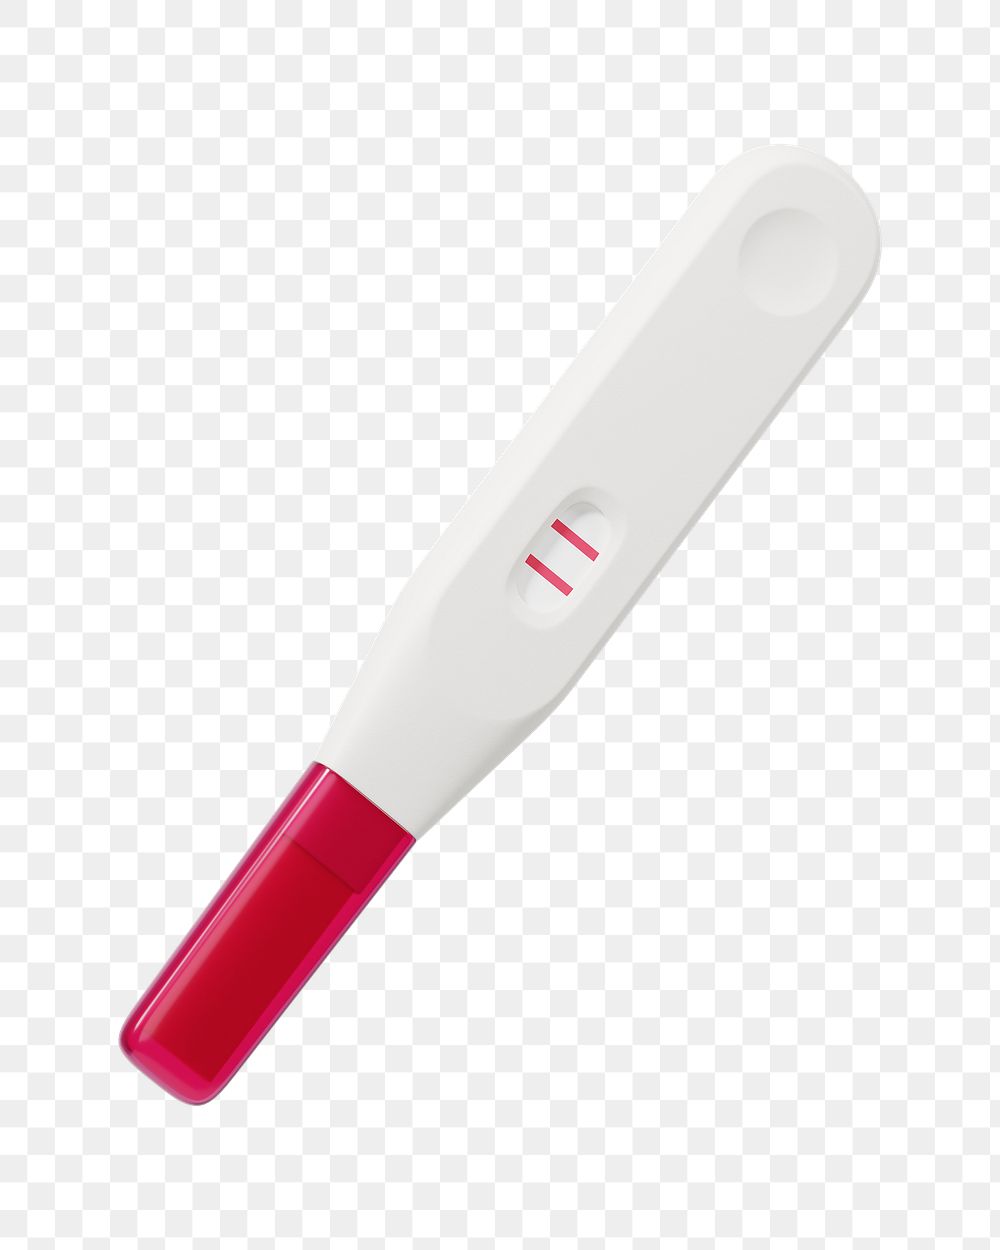 PNG 3D positive pregnancy test, element illustration, transparent background